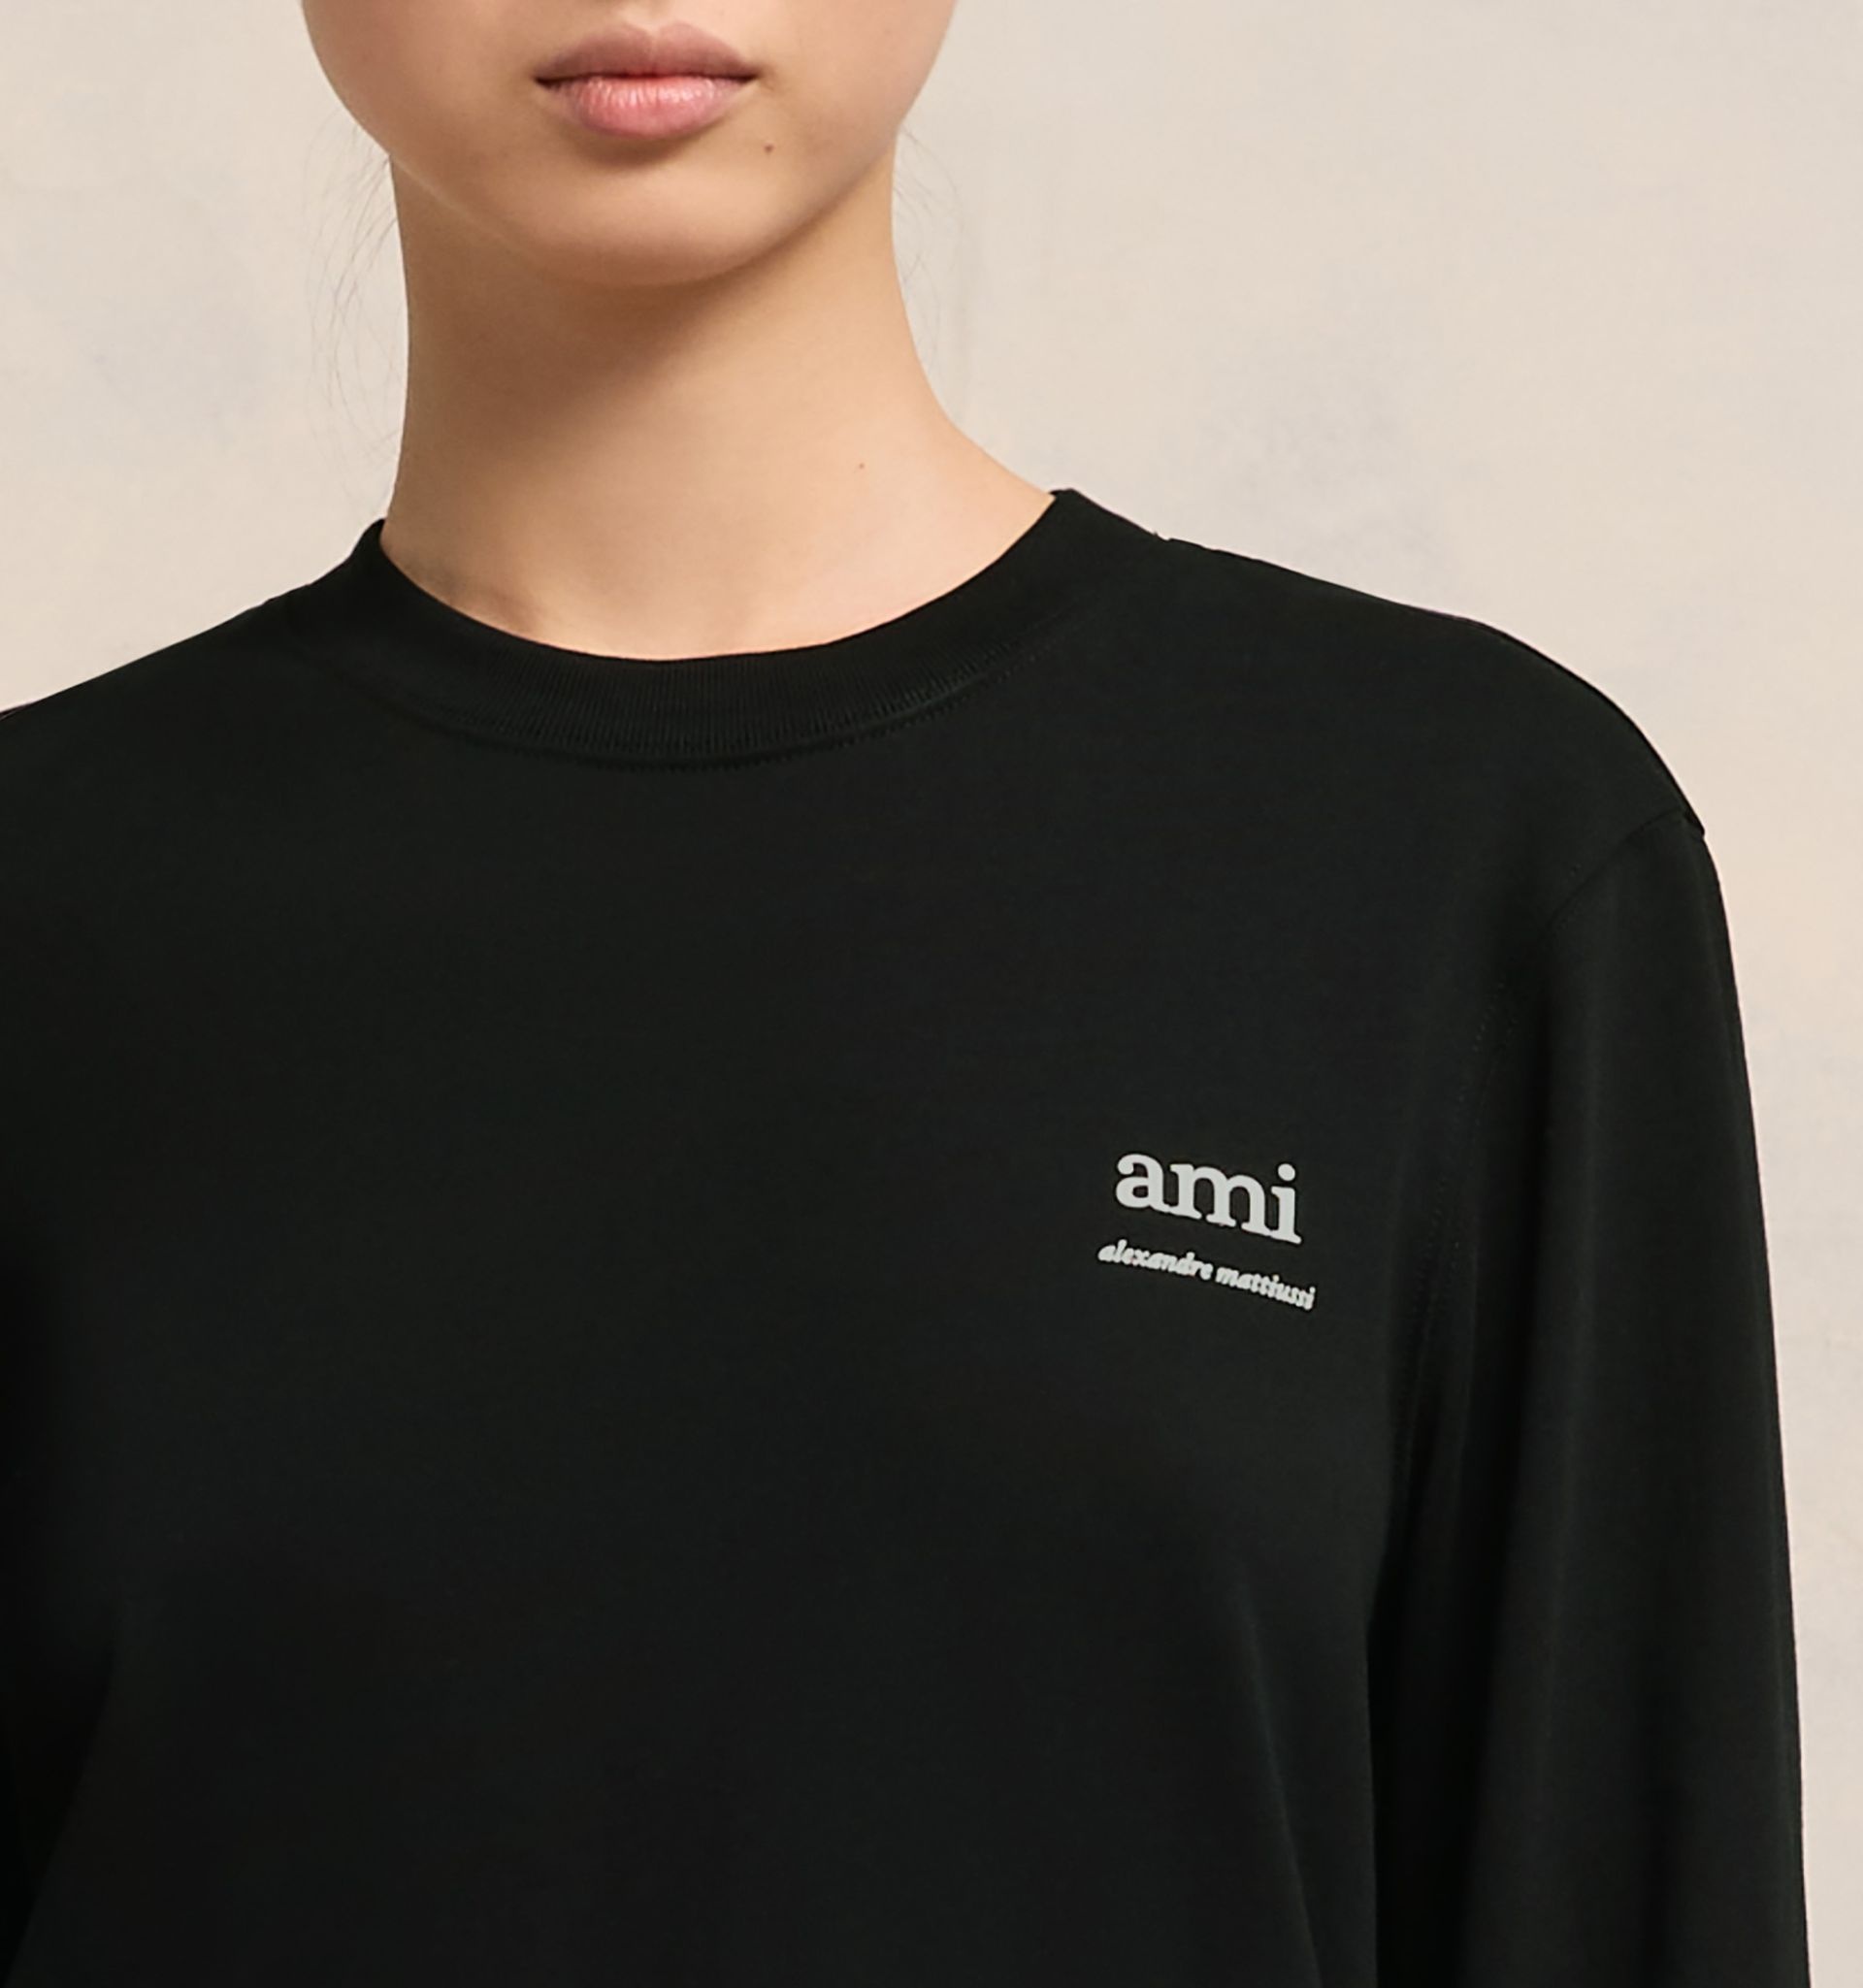 Long Sleeve Ami Alexandre Mattiussi T-shirt - 8